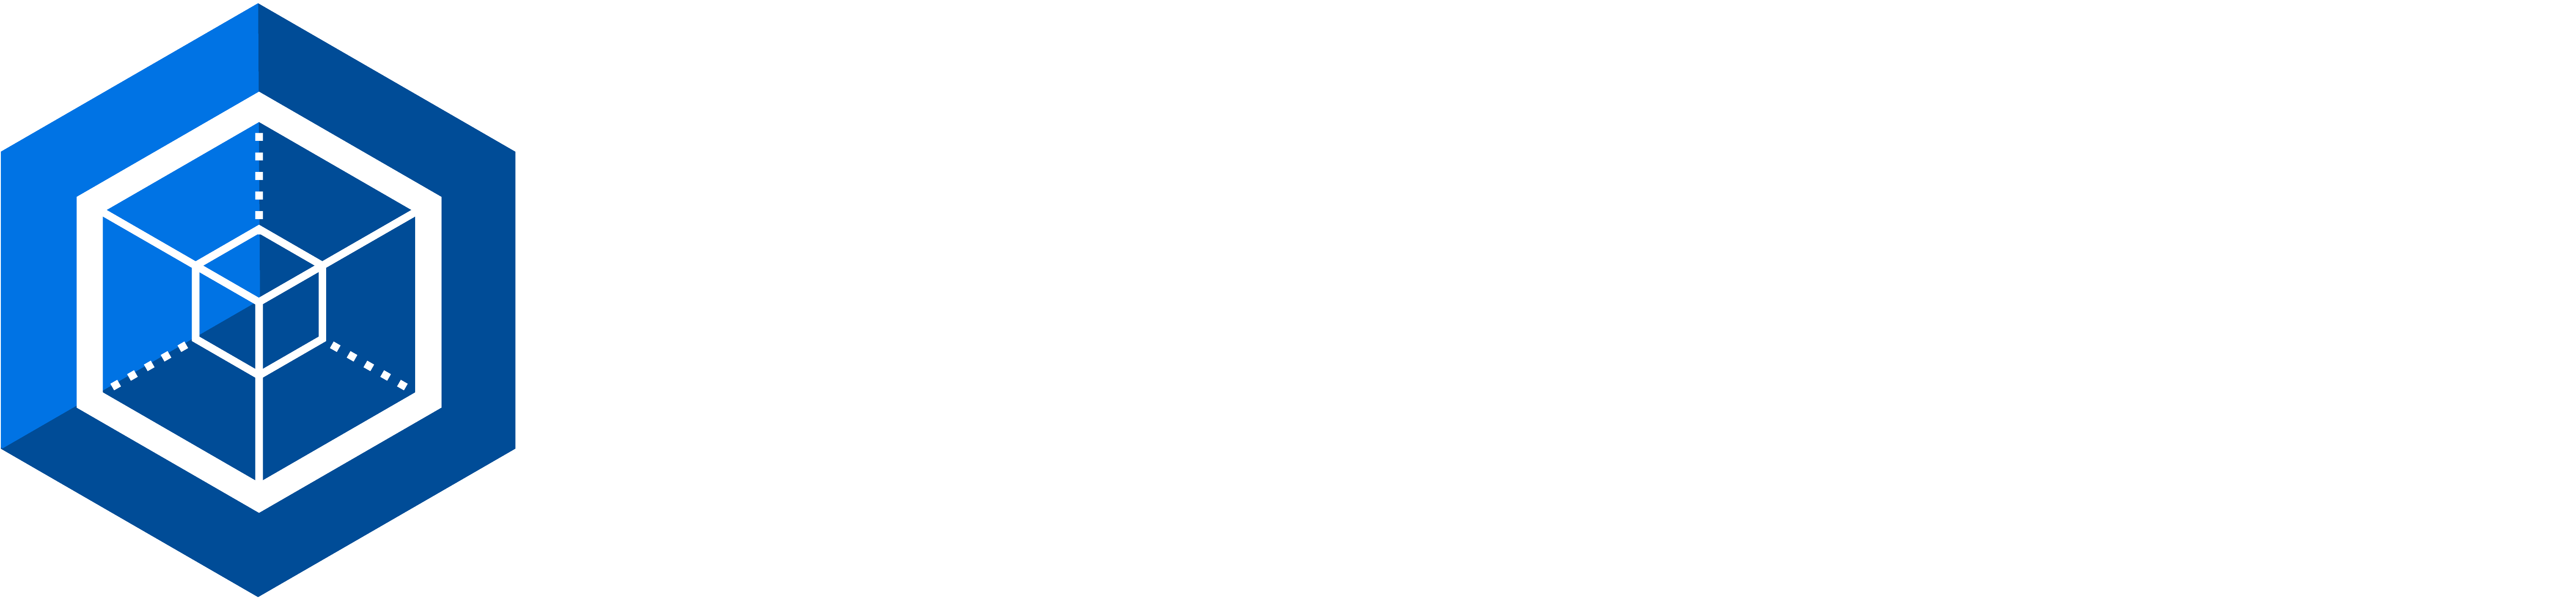 Space Situational Awareness (SSA) Logo